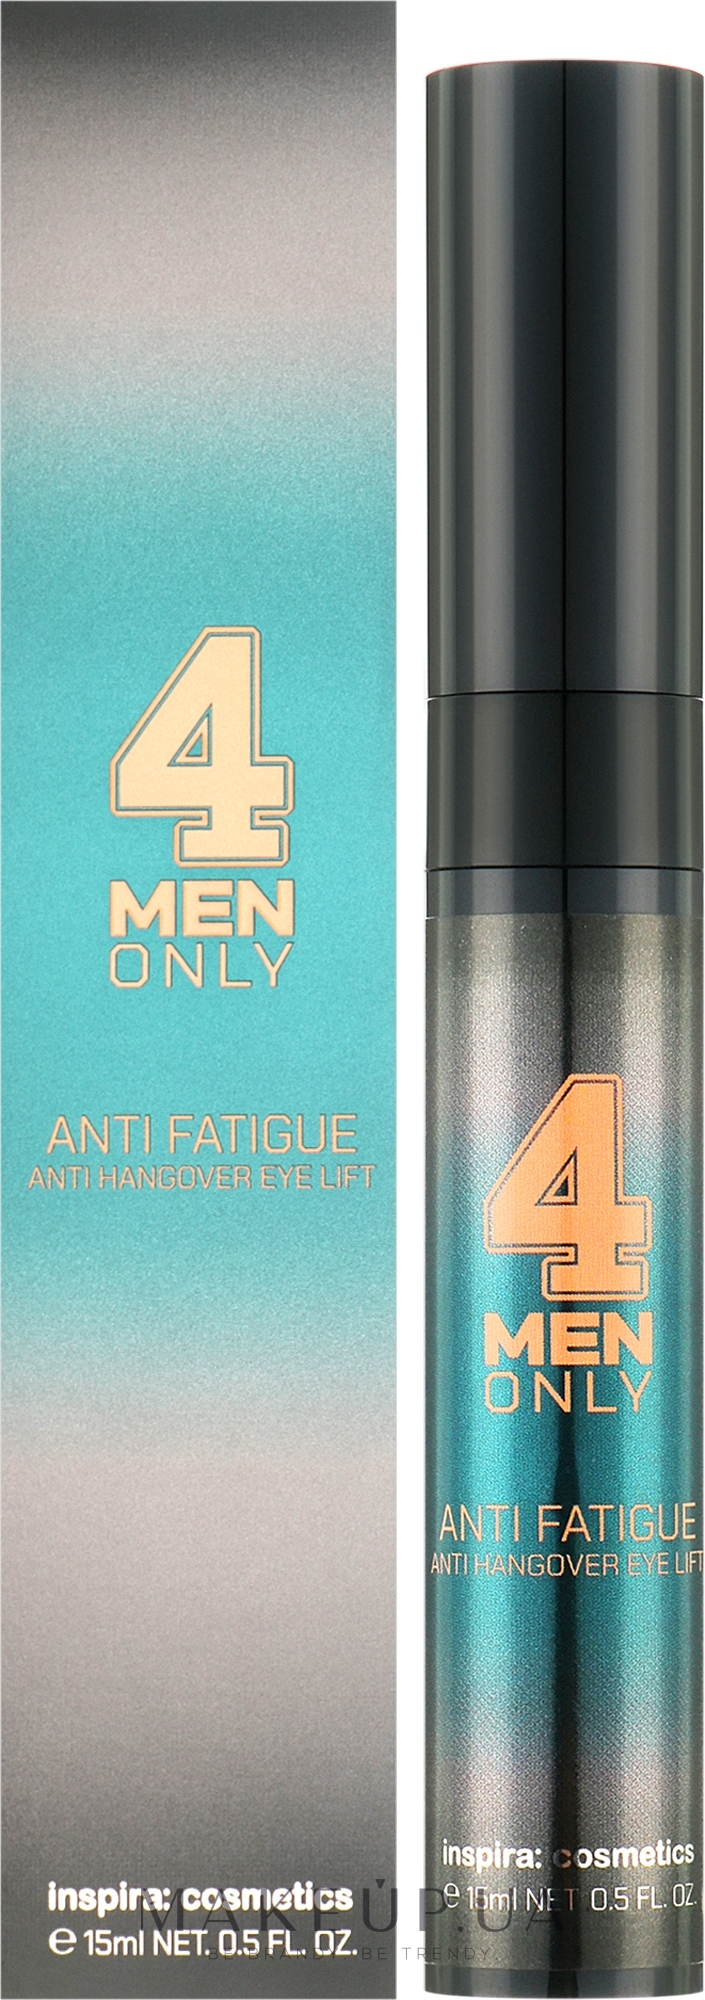 Крем-лифтинг против отеков и темных кругов под глазами - Inspira:cosmetics 4 Men Only Anti Fatigue Anti Hangover Eye Lift  — фото 15ml